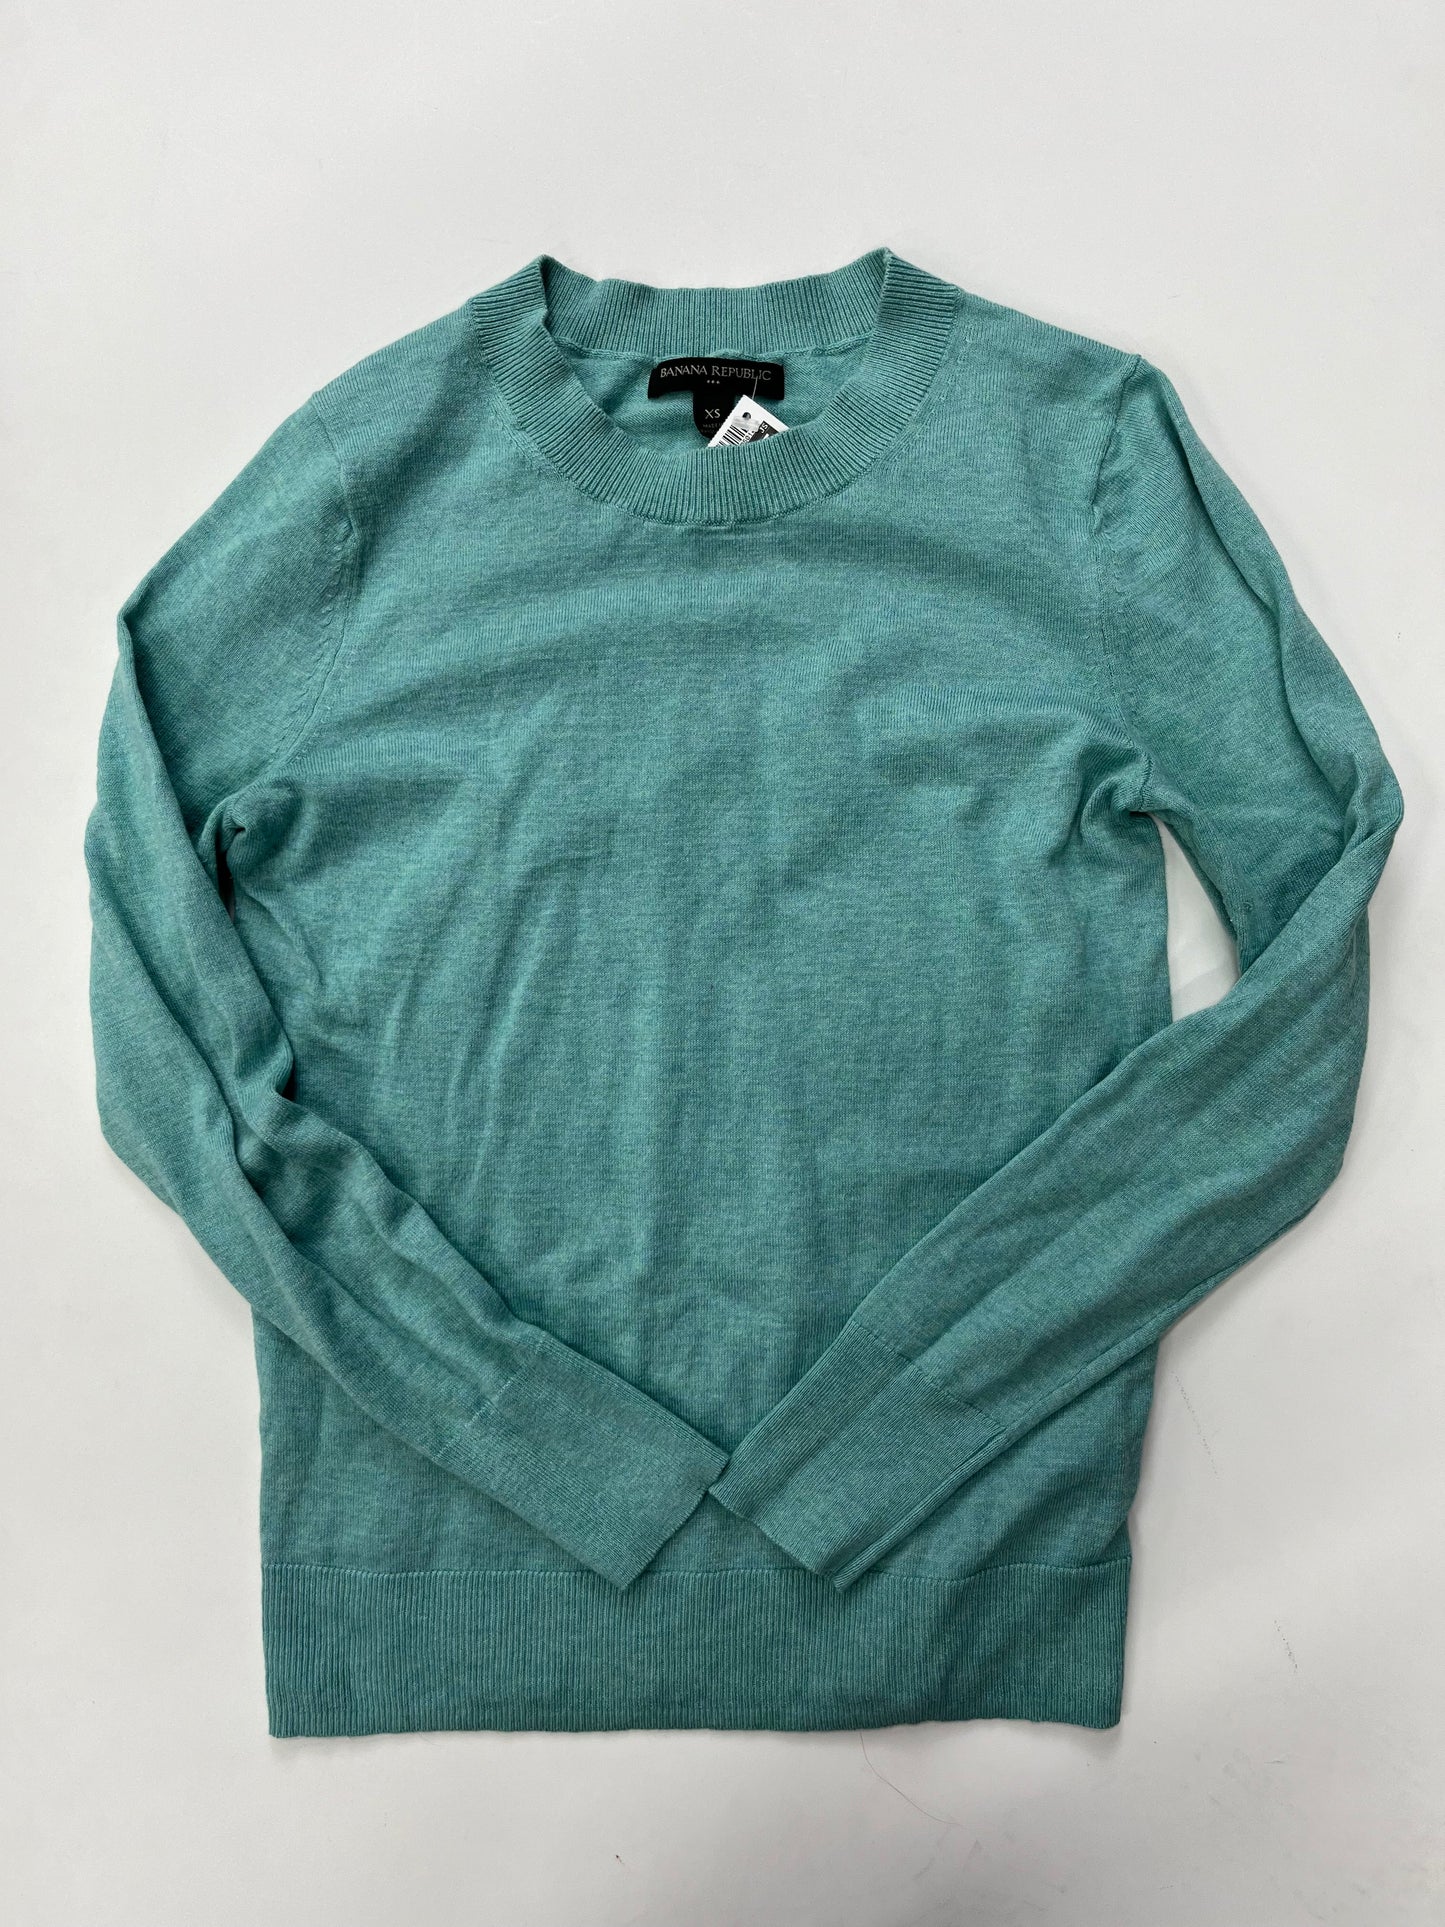 Sweater By Banana Republic  Size: Xs